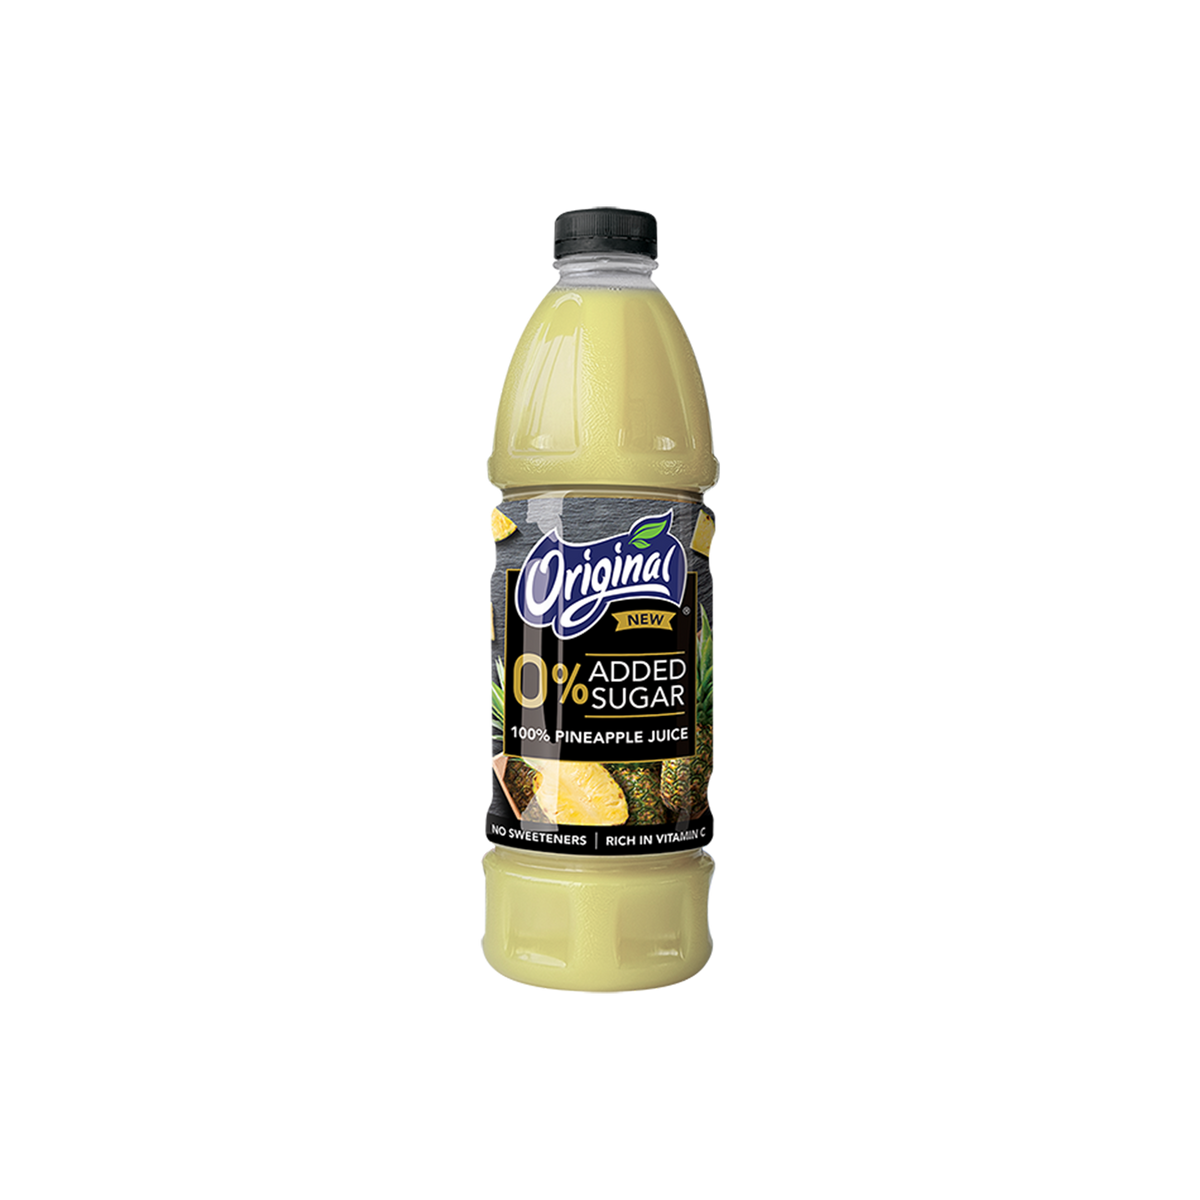 Original Pineapple Juice 100% 1.4L